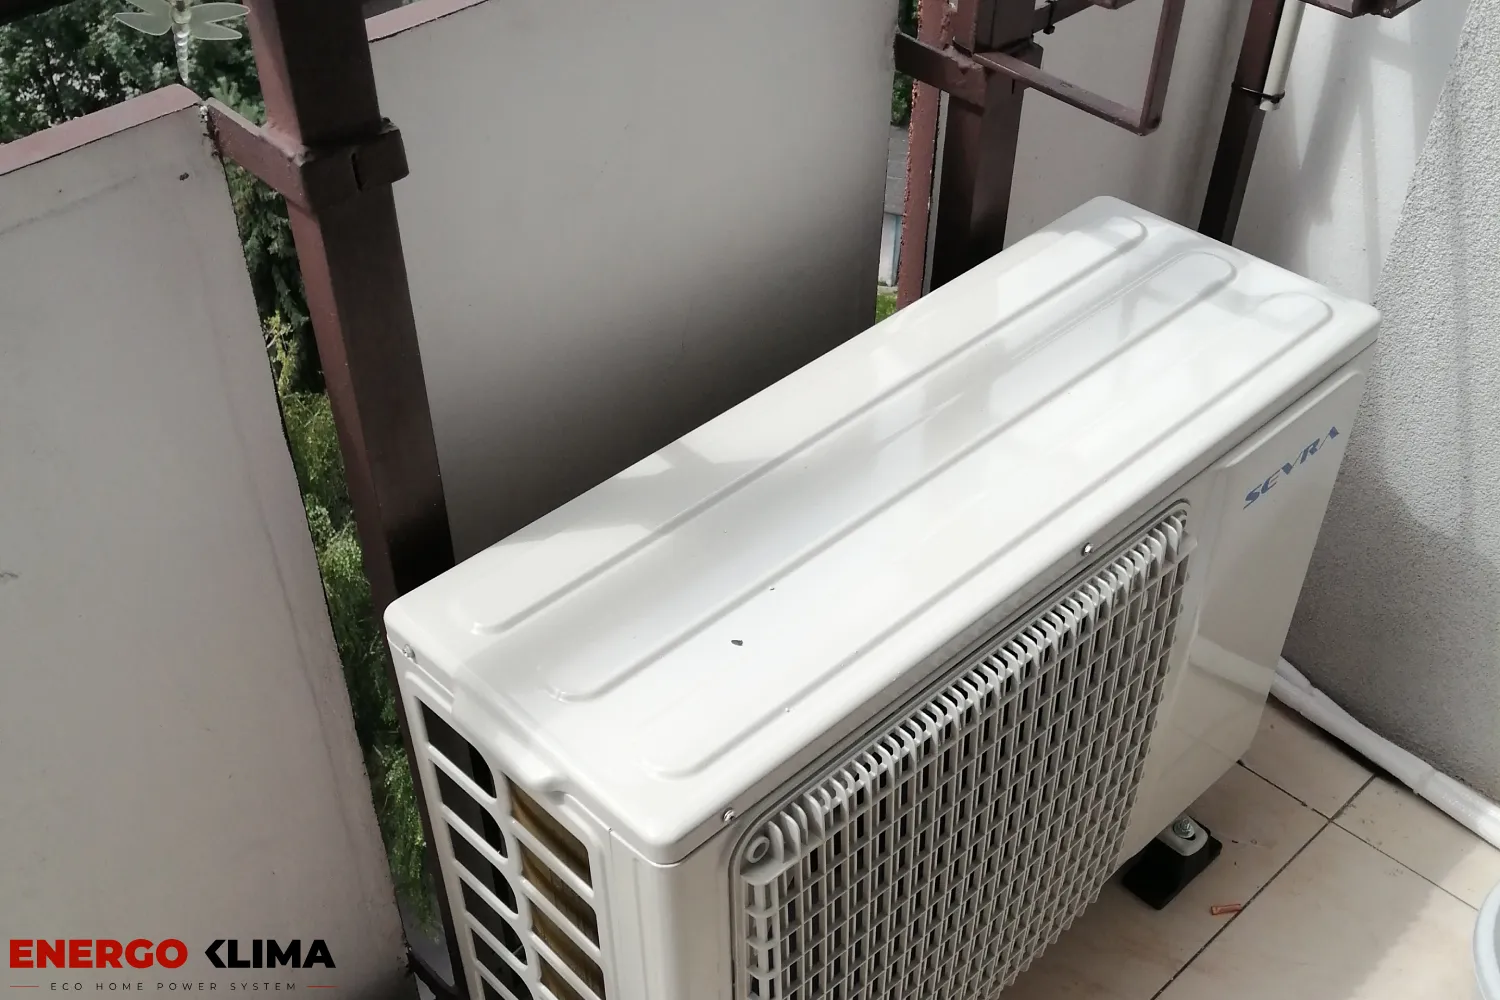 Jednostka zewnętrzna klimatyzacji mieszkaniowej umieszczona na zewnątrz